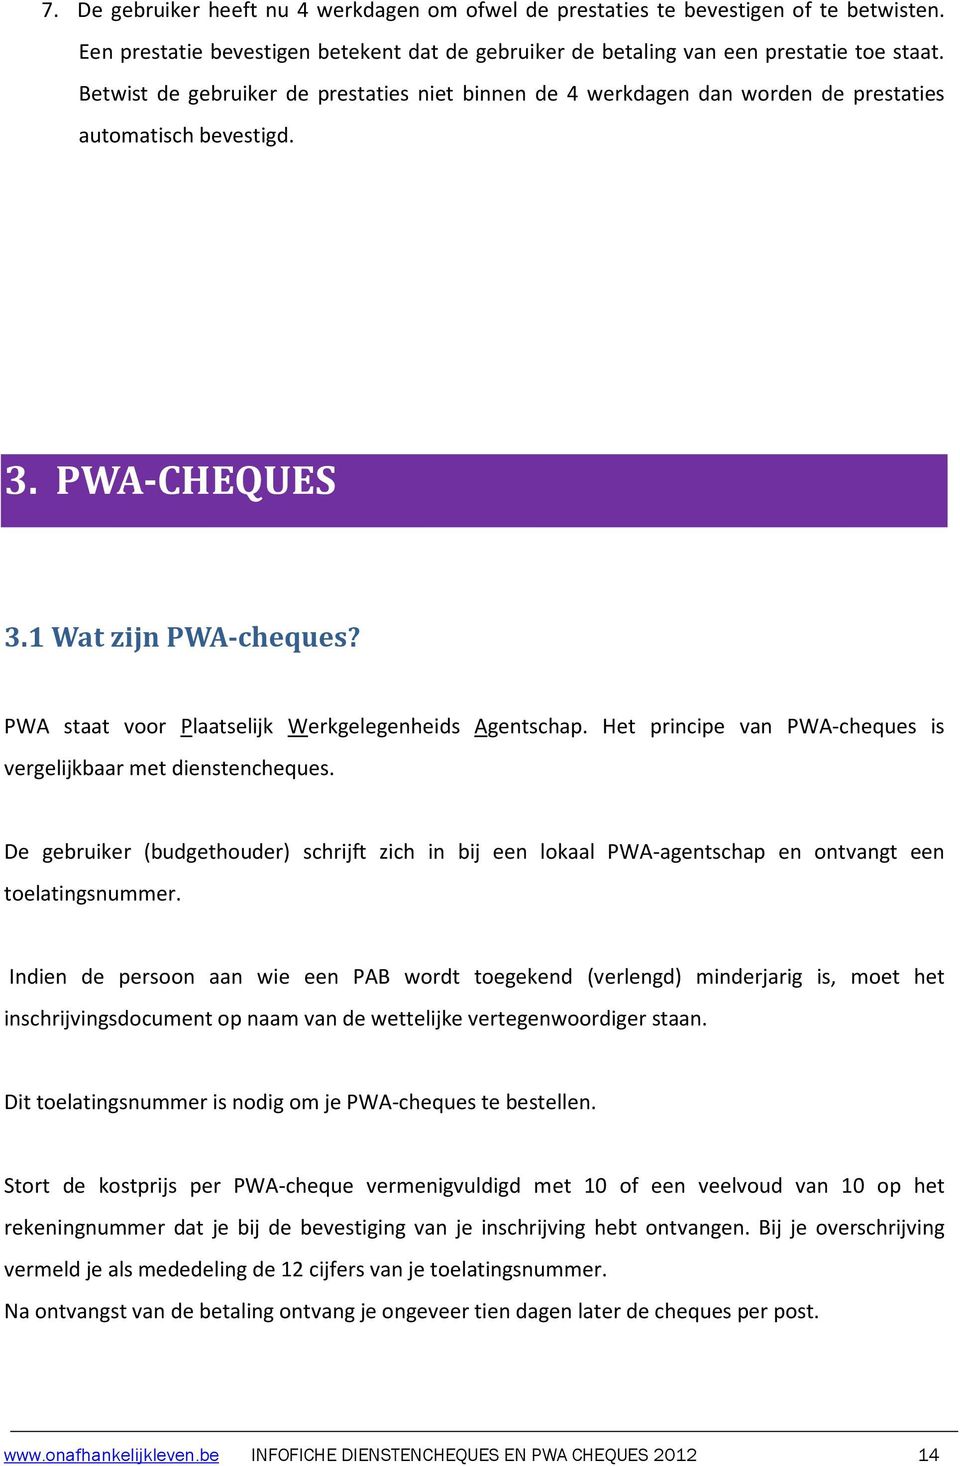 PWA staat voor Plaatselijk Werkgelegenheids Agentschap. Het principe van PWA-cheques is vergelijkbaar met dienstencheques.